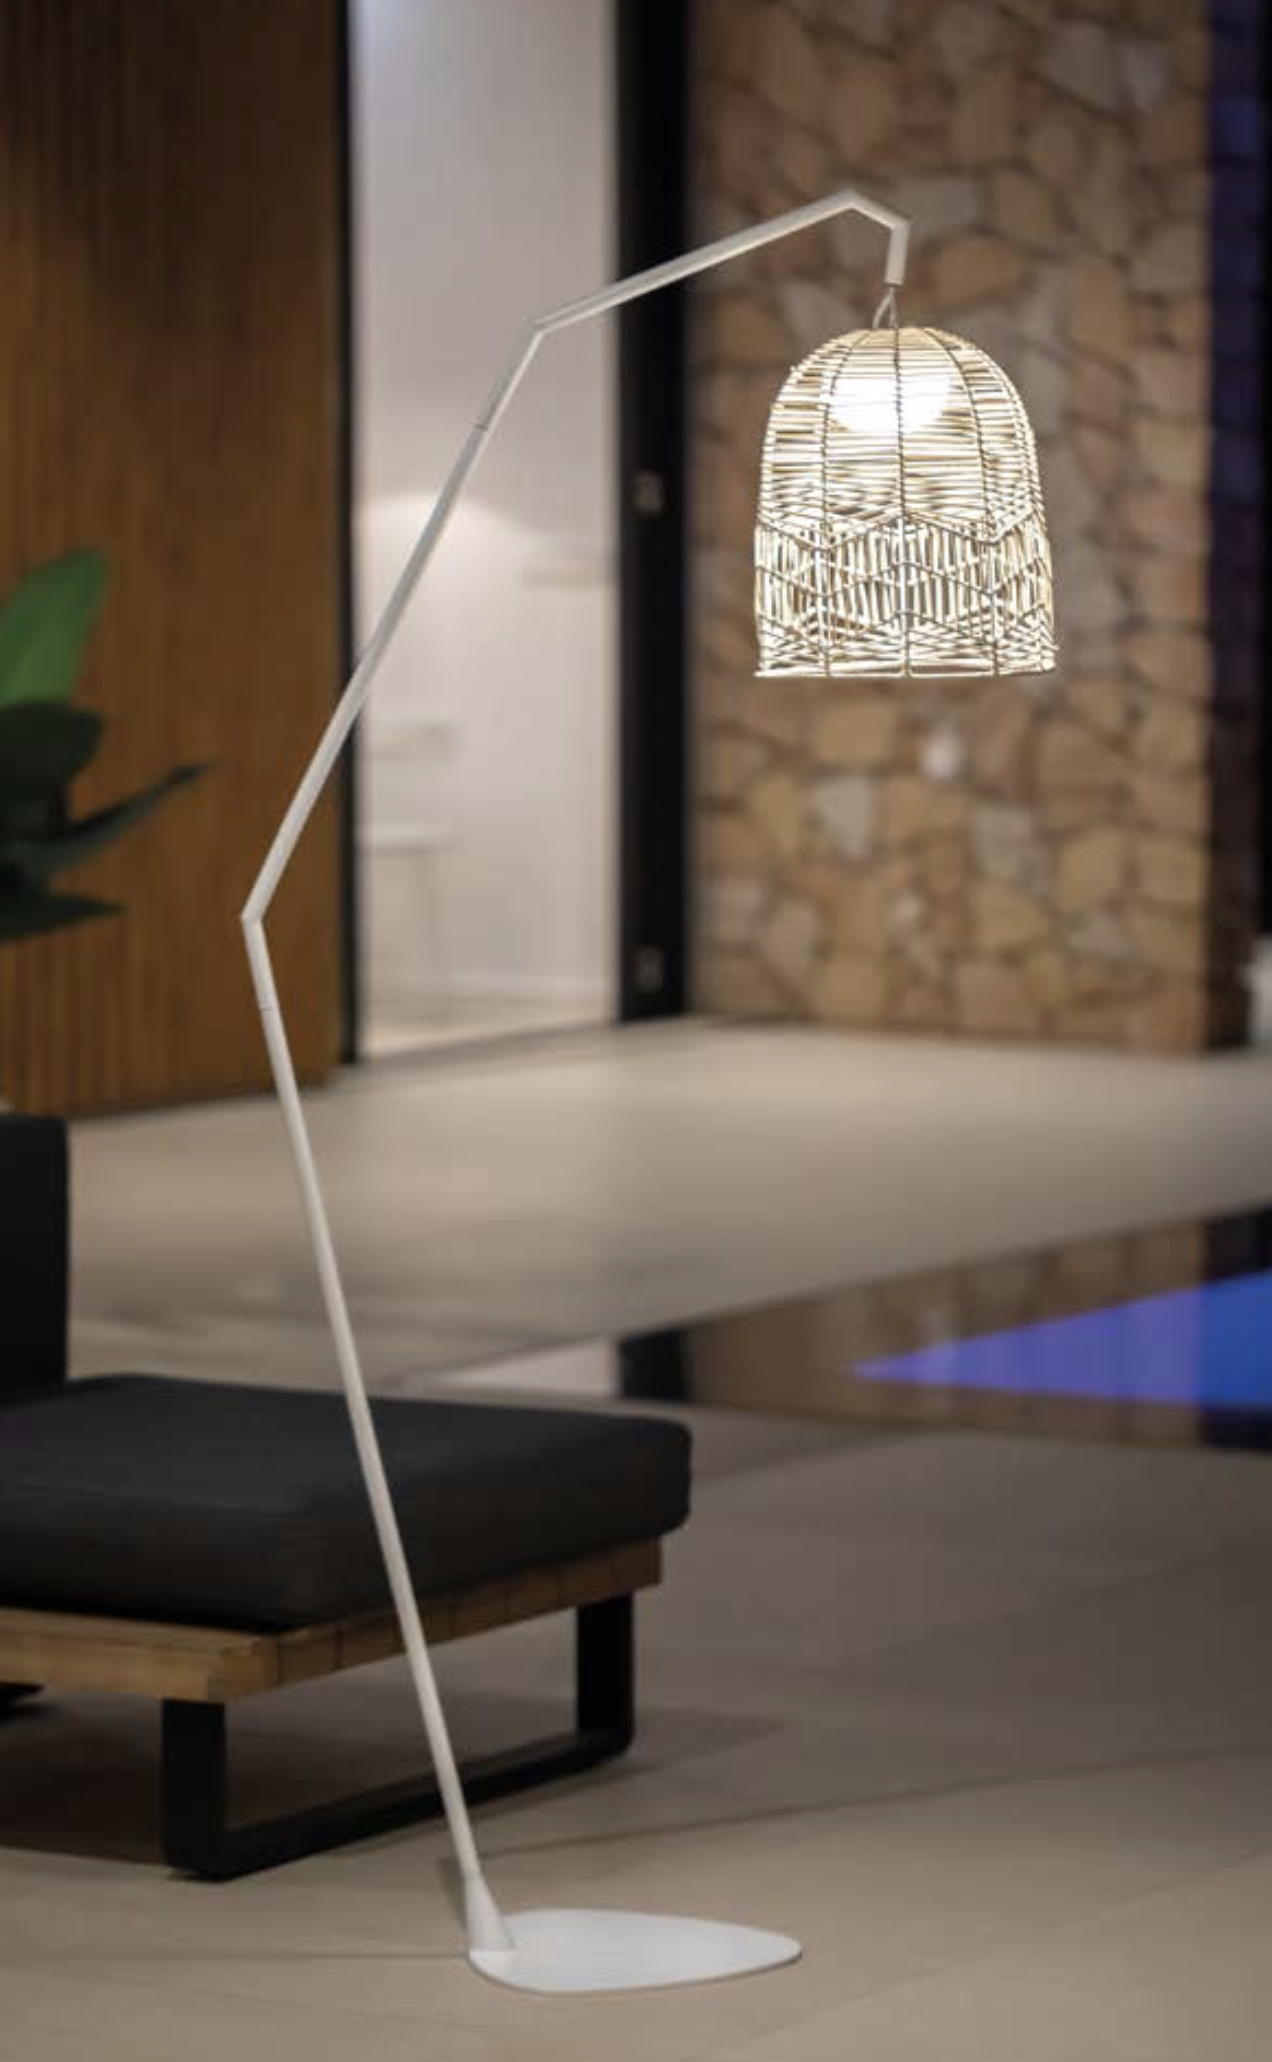 Santorini buitenlamp 165 cm hoog draadloos / oplaadbaar made by NewGarden